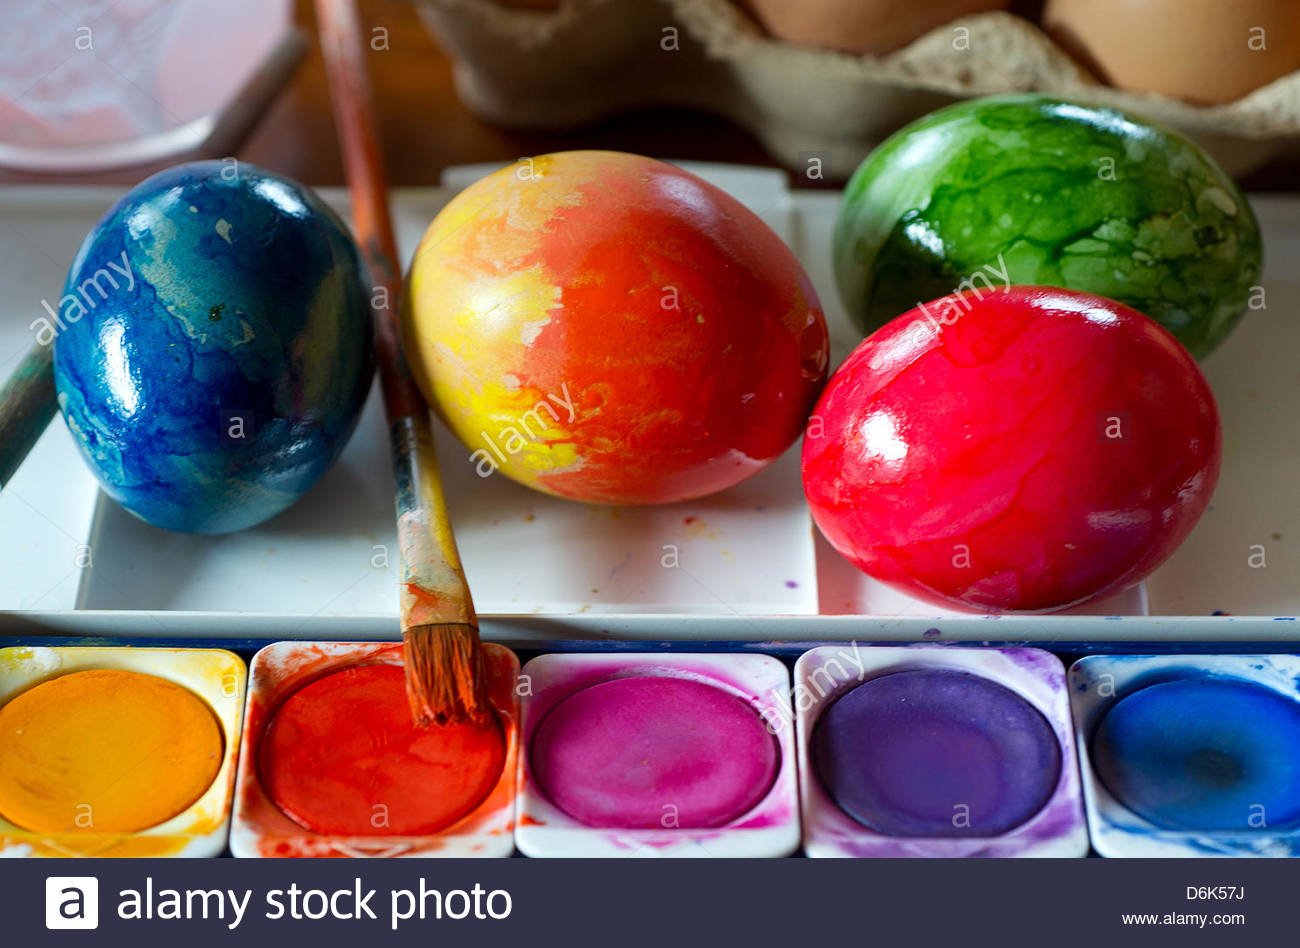 Можно красить яйца красками. Окрашивание яиц пищевыми красителями. Покраска яиц пищевыми красителями. Красим яйца пищевыми красителями. Окрашивание яиц акварелью.